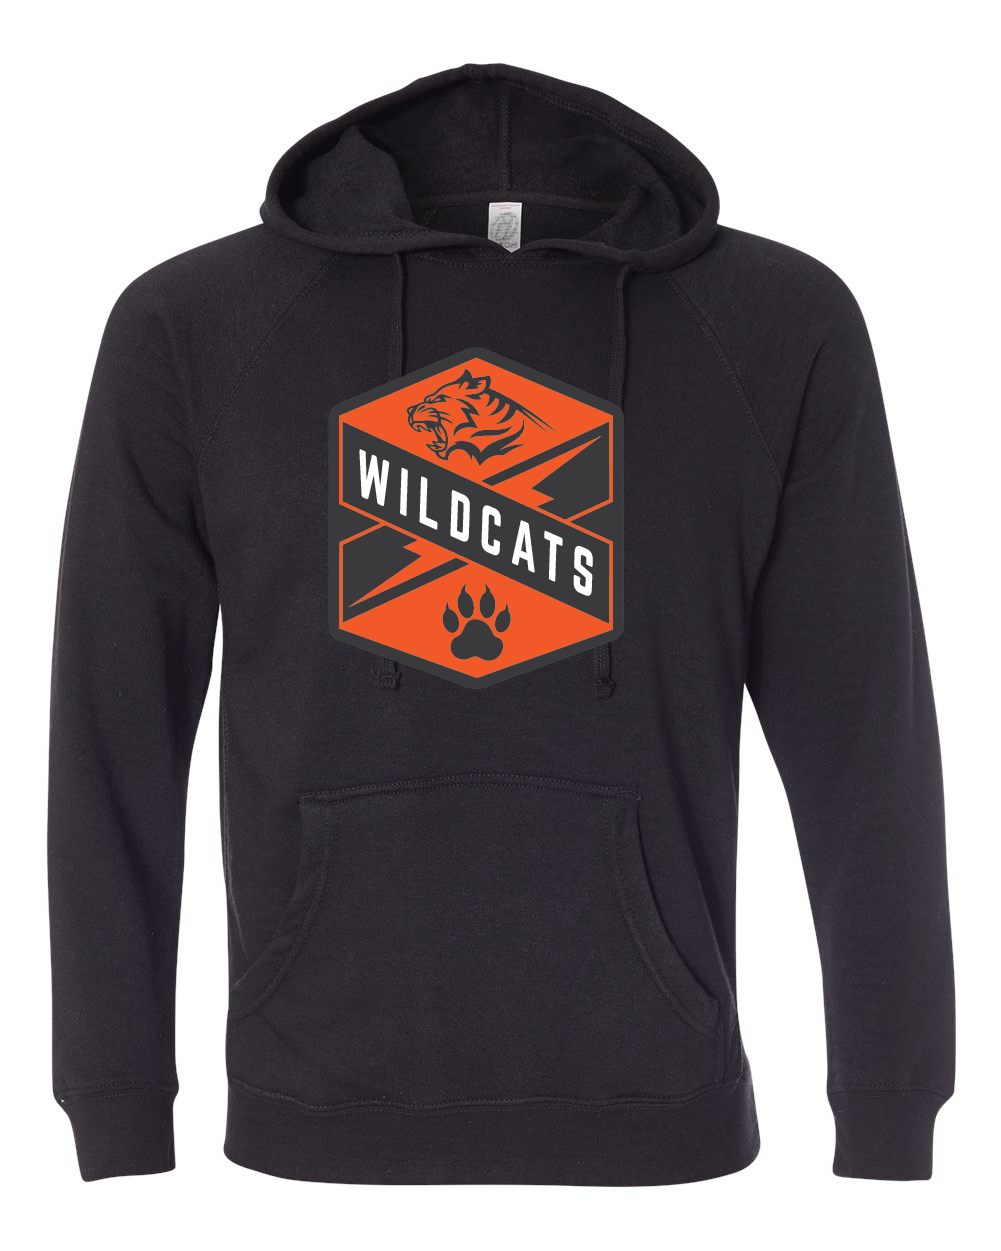 Black Raglan hoodie with Wildcats Crest in orange